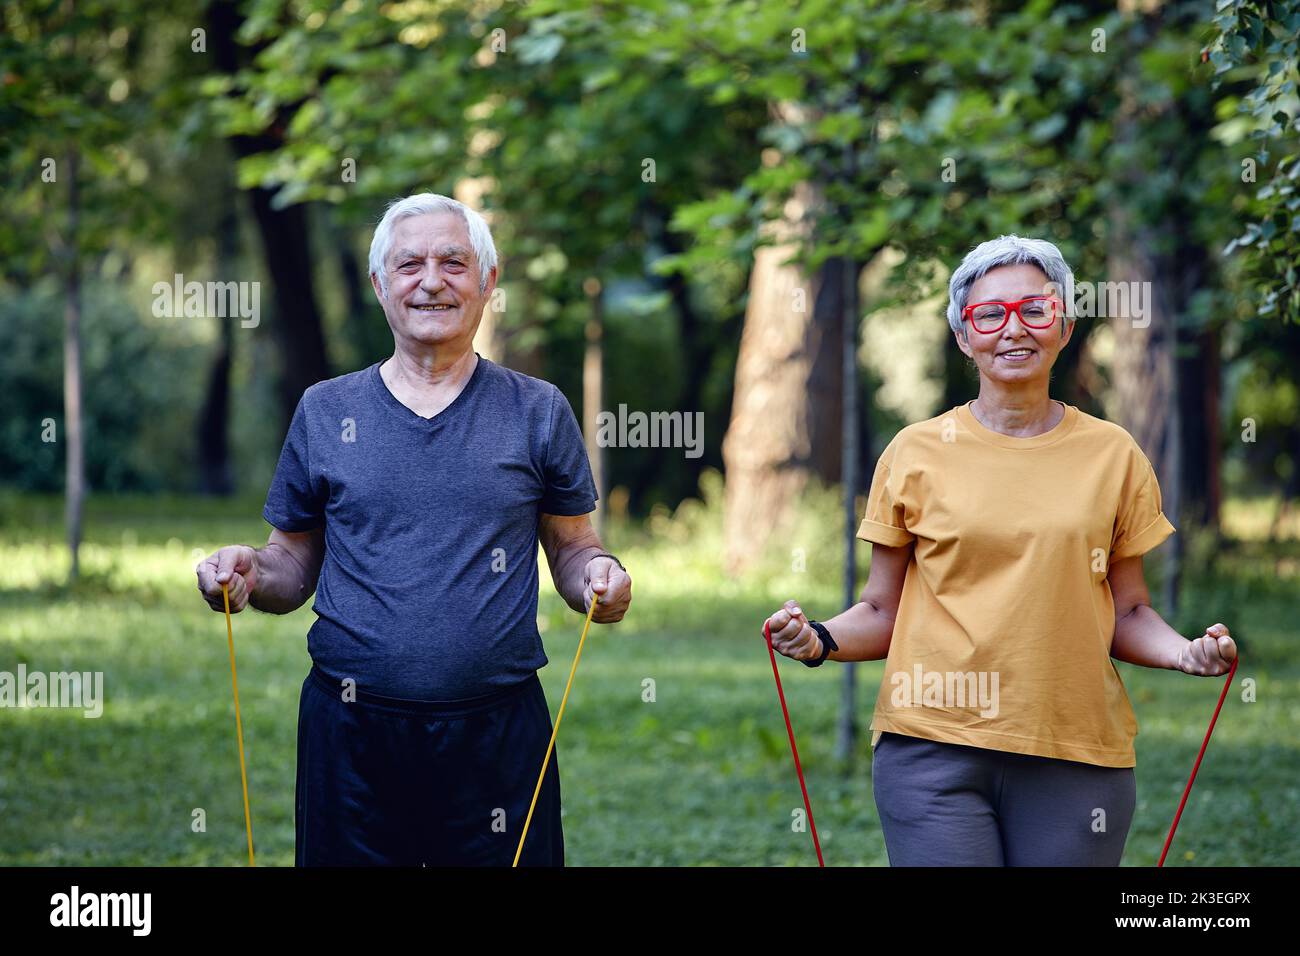 Ältere Ehegatten tragen Sportkleidung und machen morgens im Sommerpark Übungen mit Gummibändern. Gesunder Lebensstil, aktiver Ruhestand Stockfoto